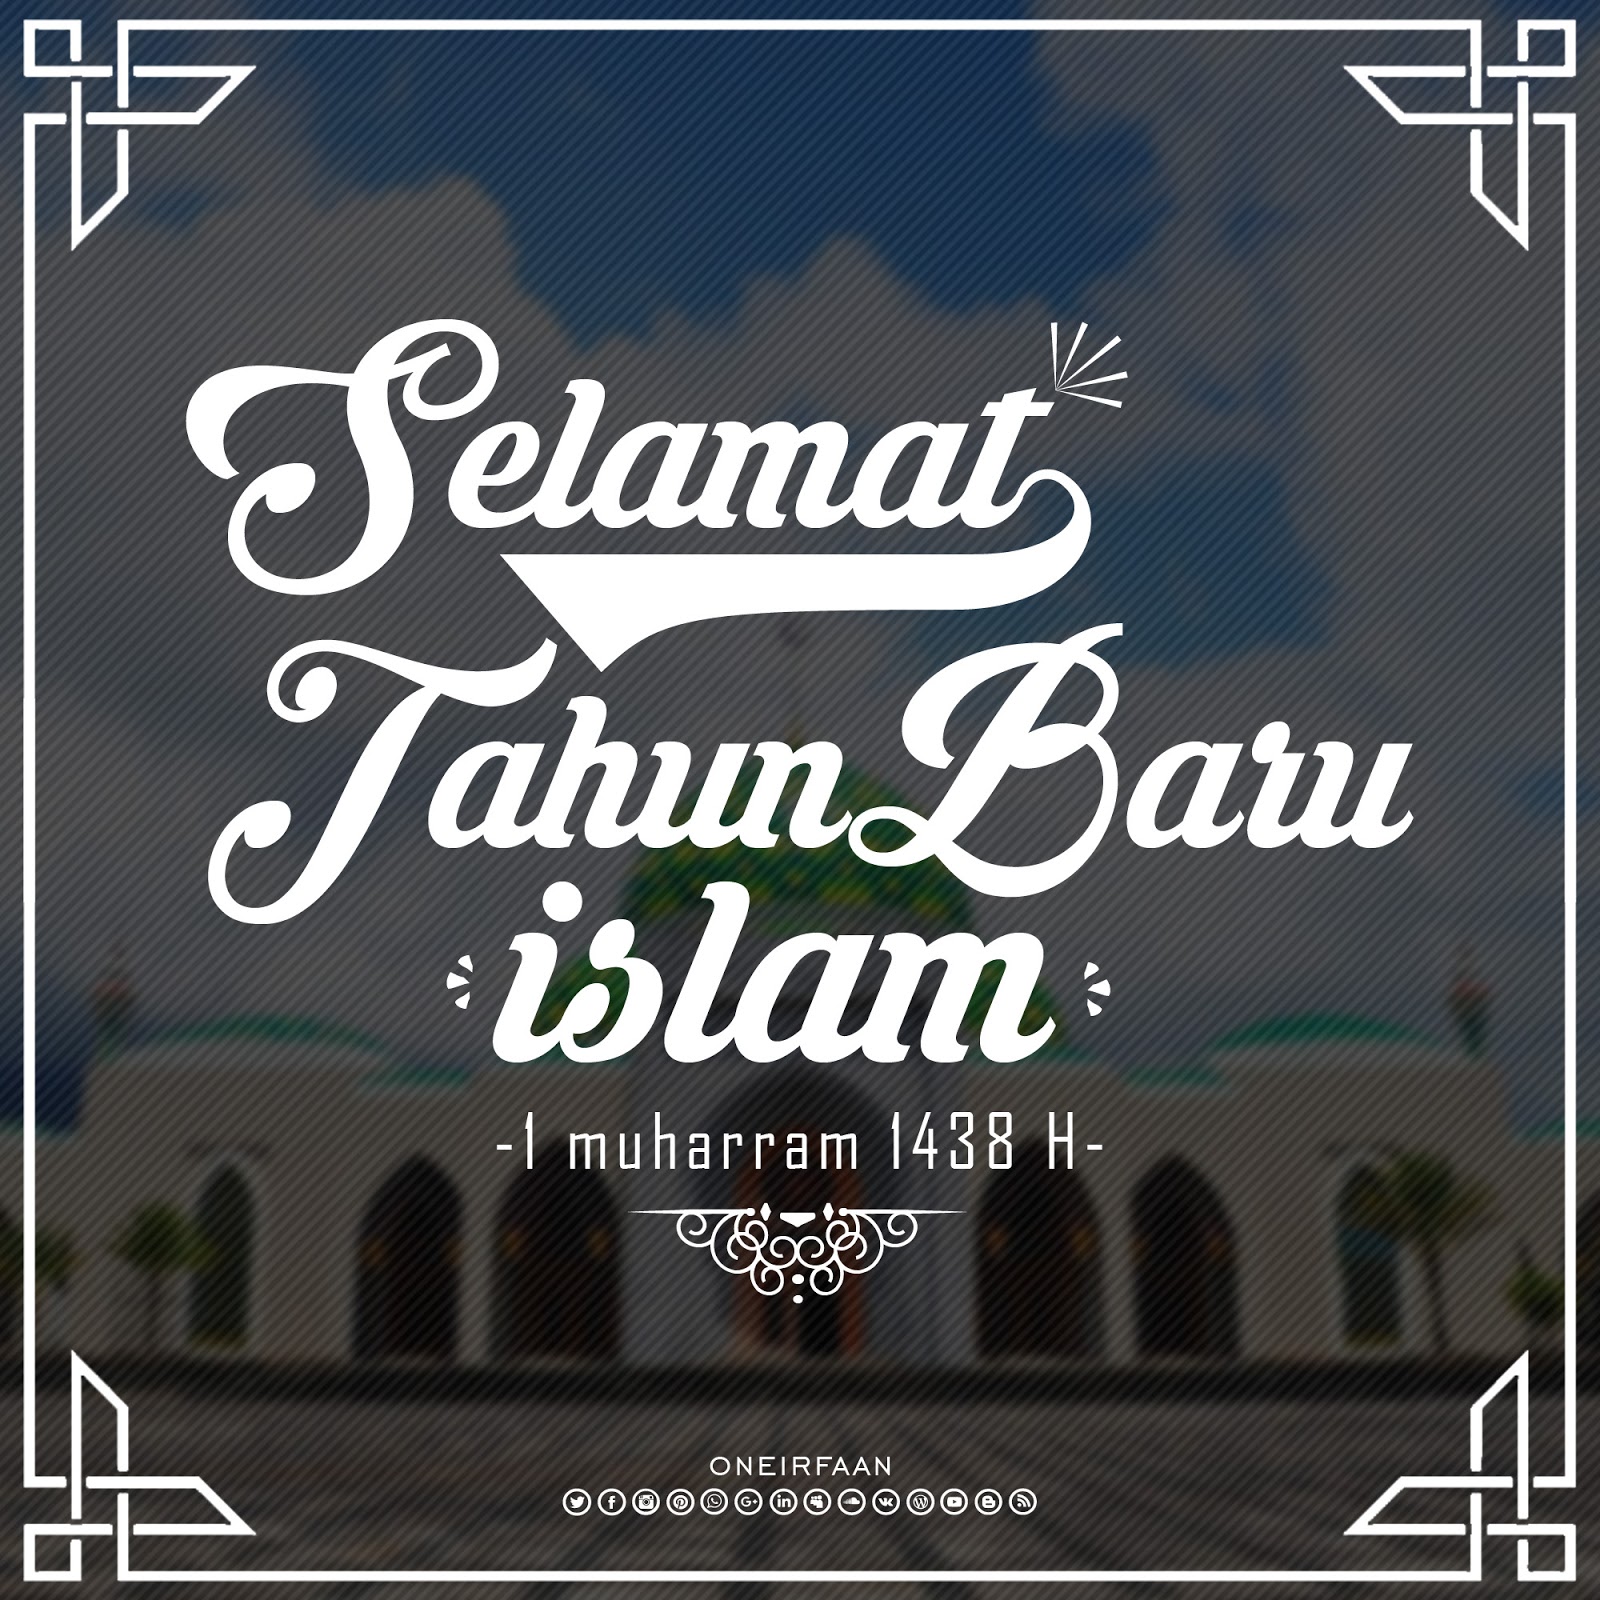 Desain Selamat Tahun Baru Islam 1438 H WAN7ISLAND